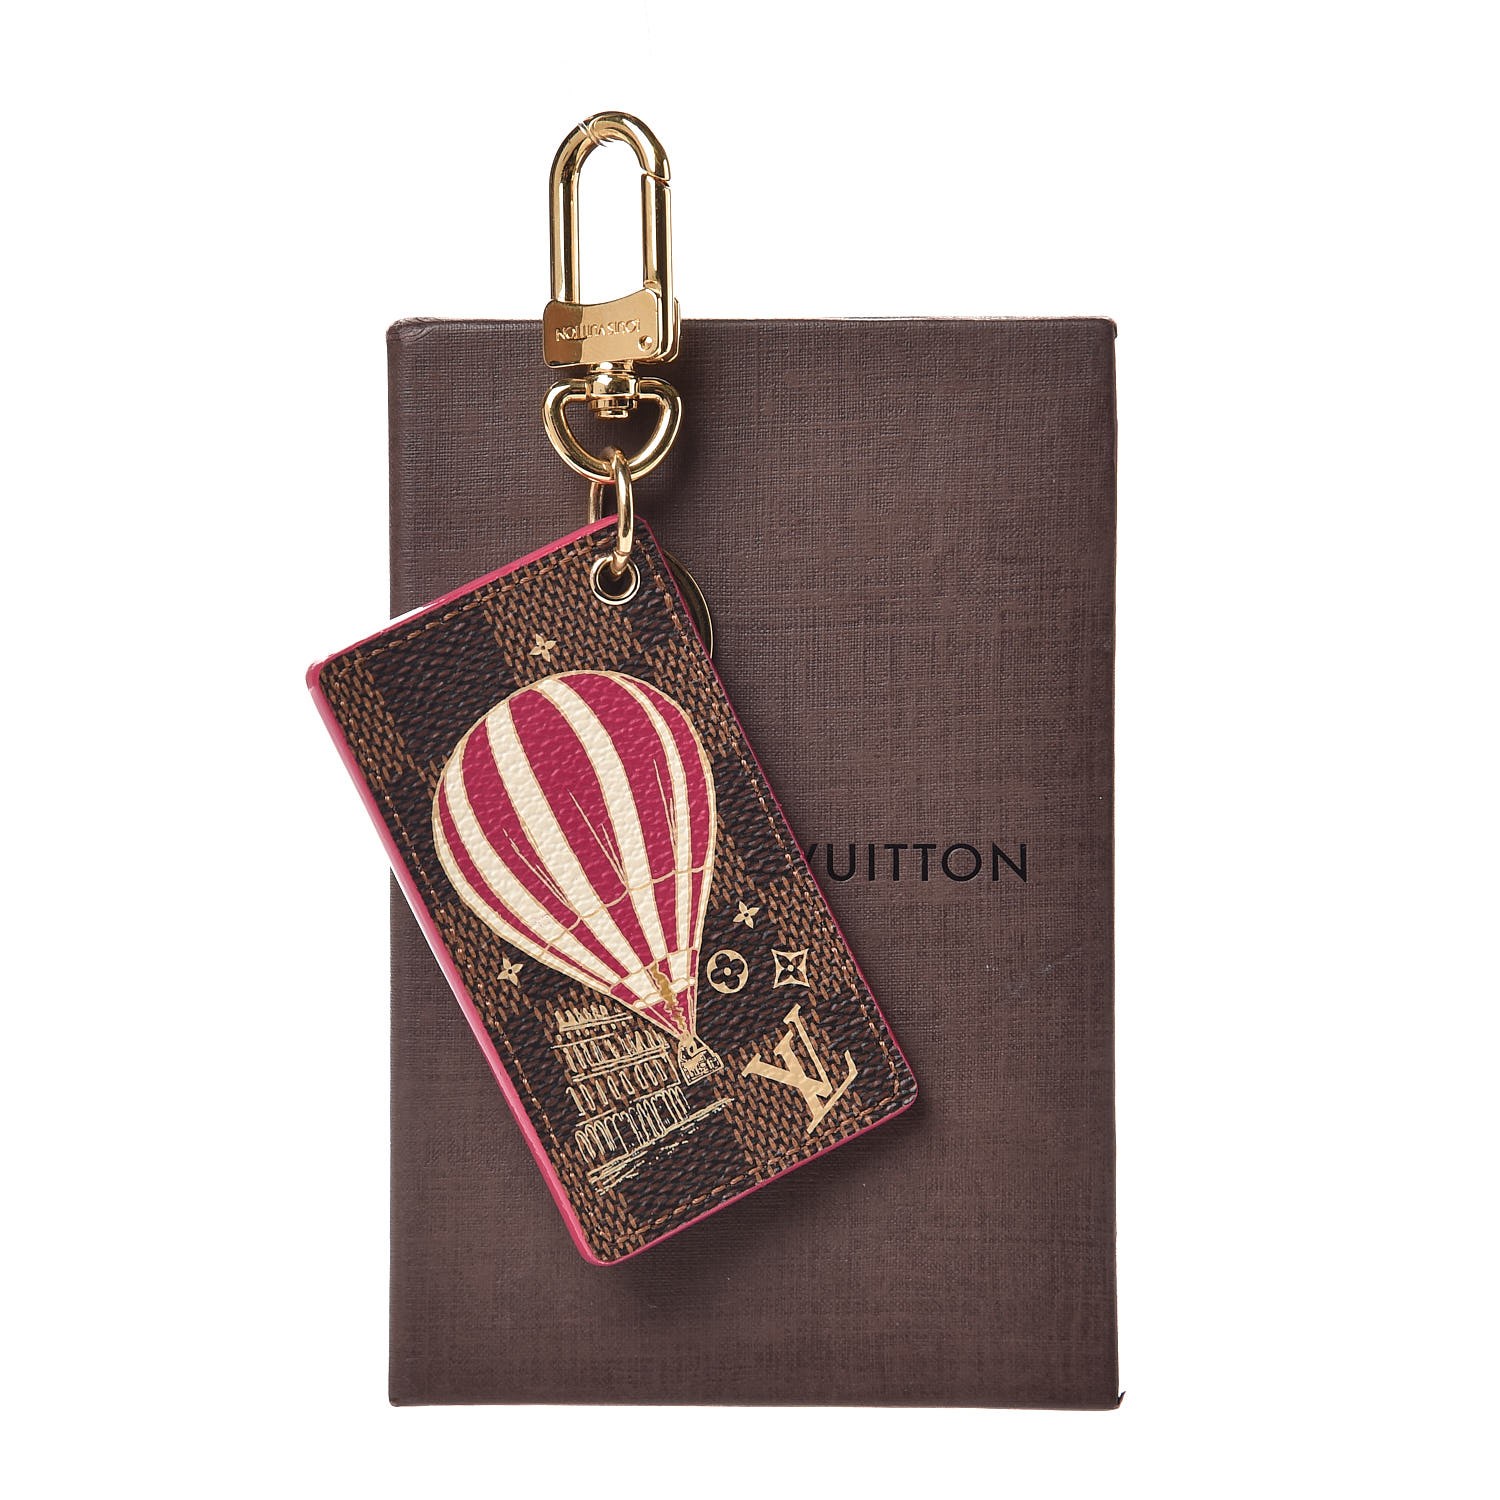 LOUIS VUITTON Monogram Illustre Air Balloon Bag Charm 87656